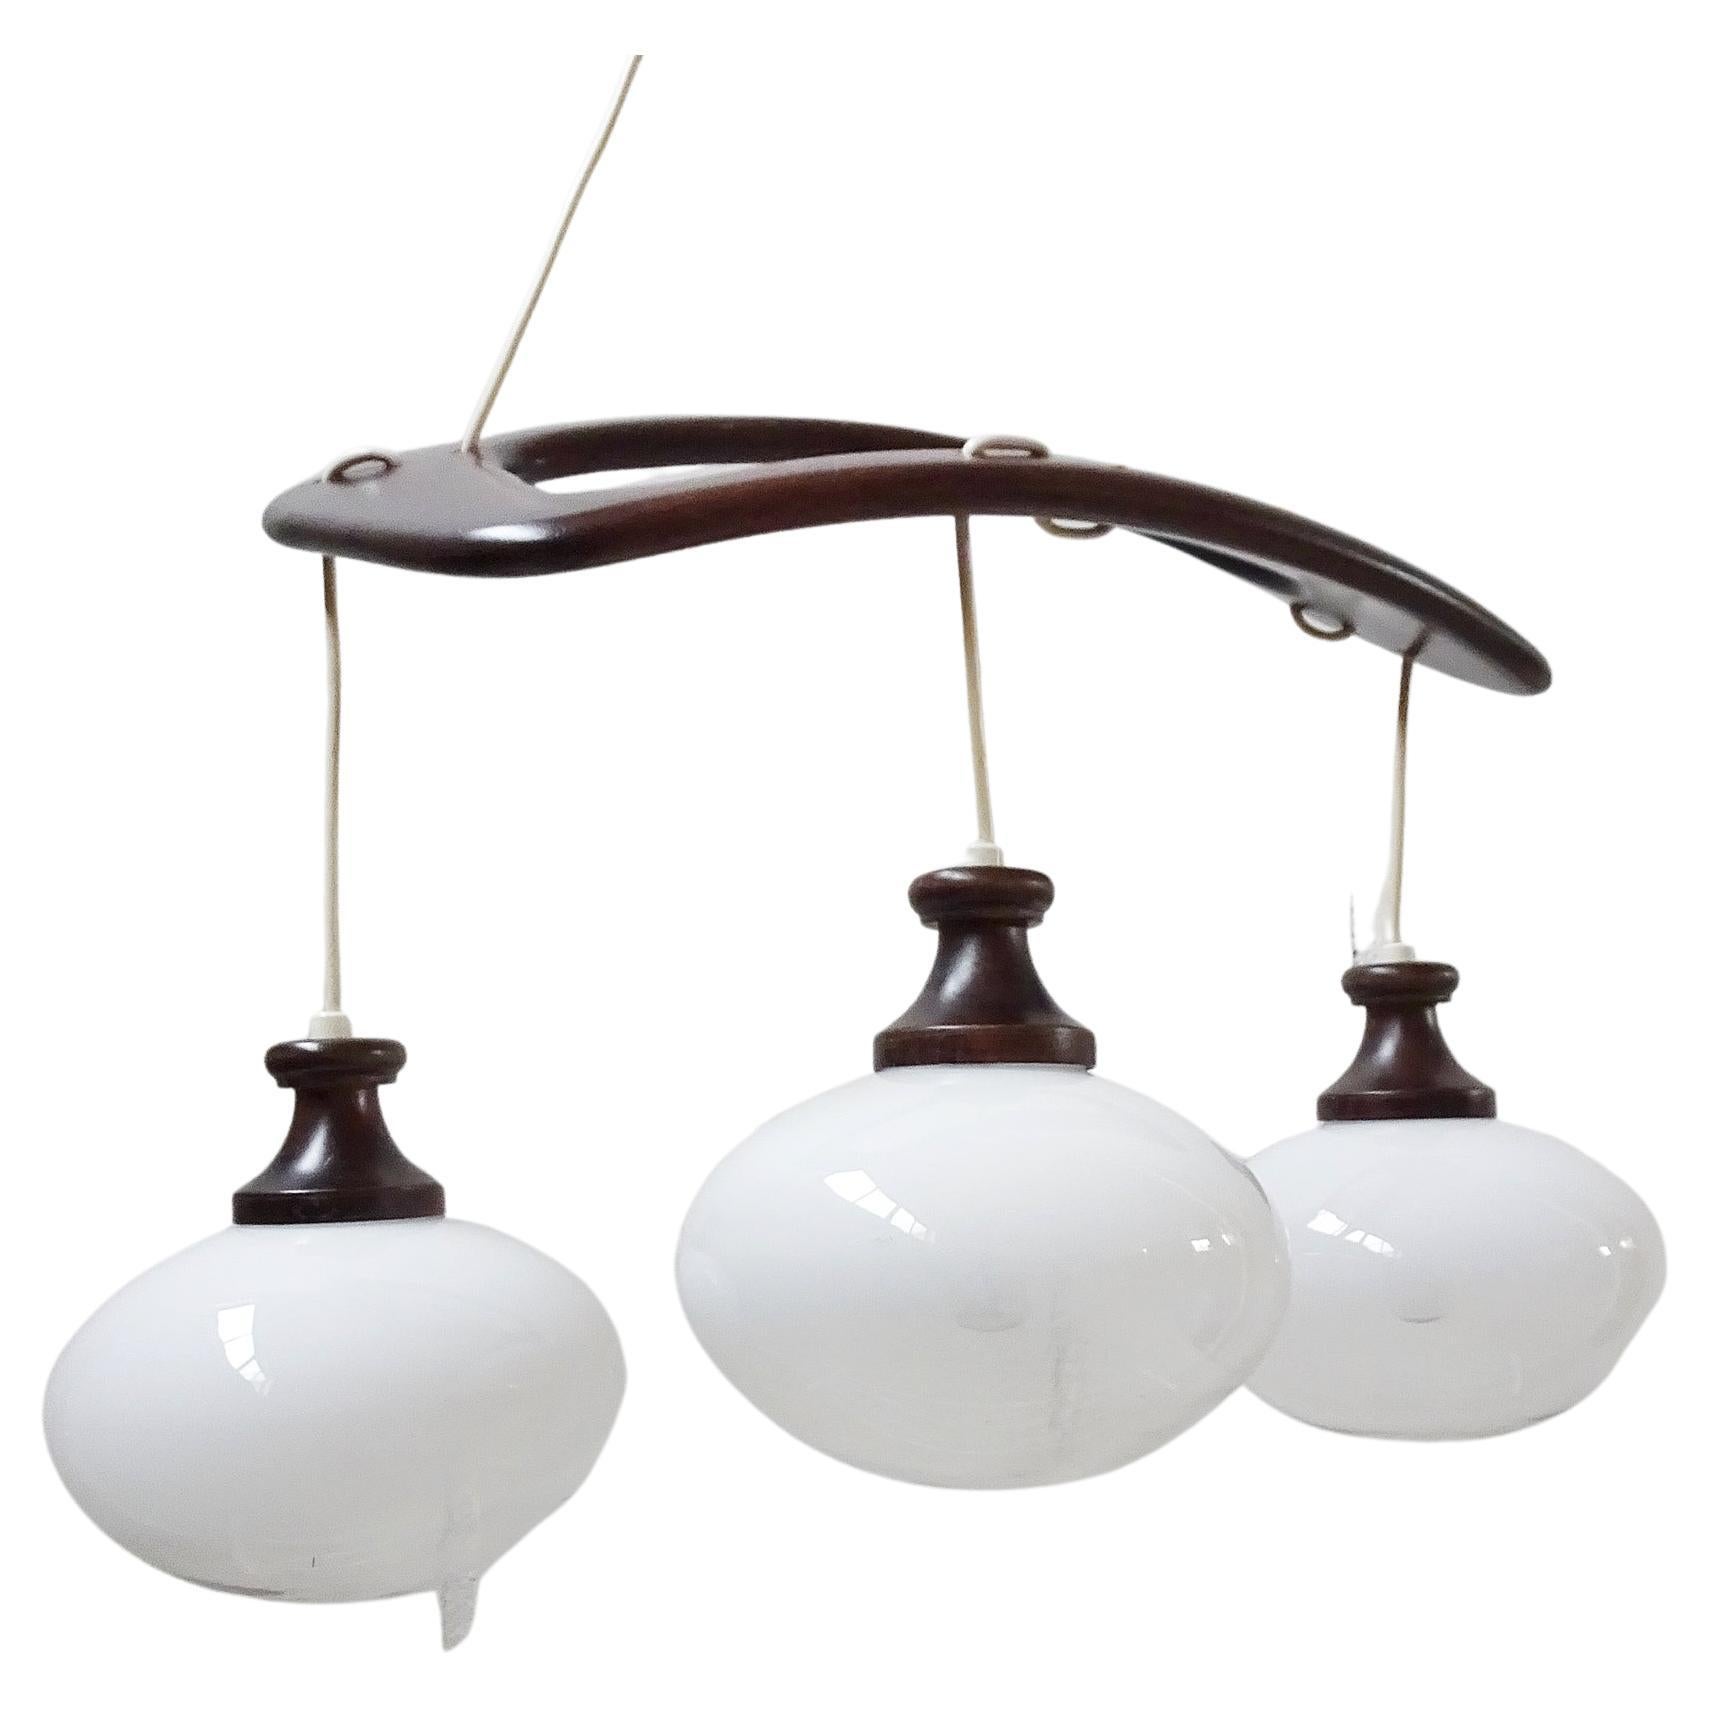 Italienische Pendelleuchte von Mazzega aus den 1960er Jahren. Formschönes Mid-Century-Design aus gewölbtem Teakholz und drei Glaskugeln. Das halbtransparente Glas macht sie zur idealen Pendelleuchte über dem Tisch.

Lampenfassung 3 x E14, die